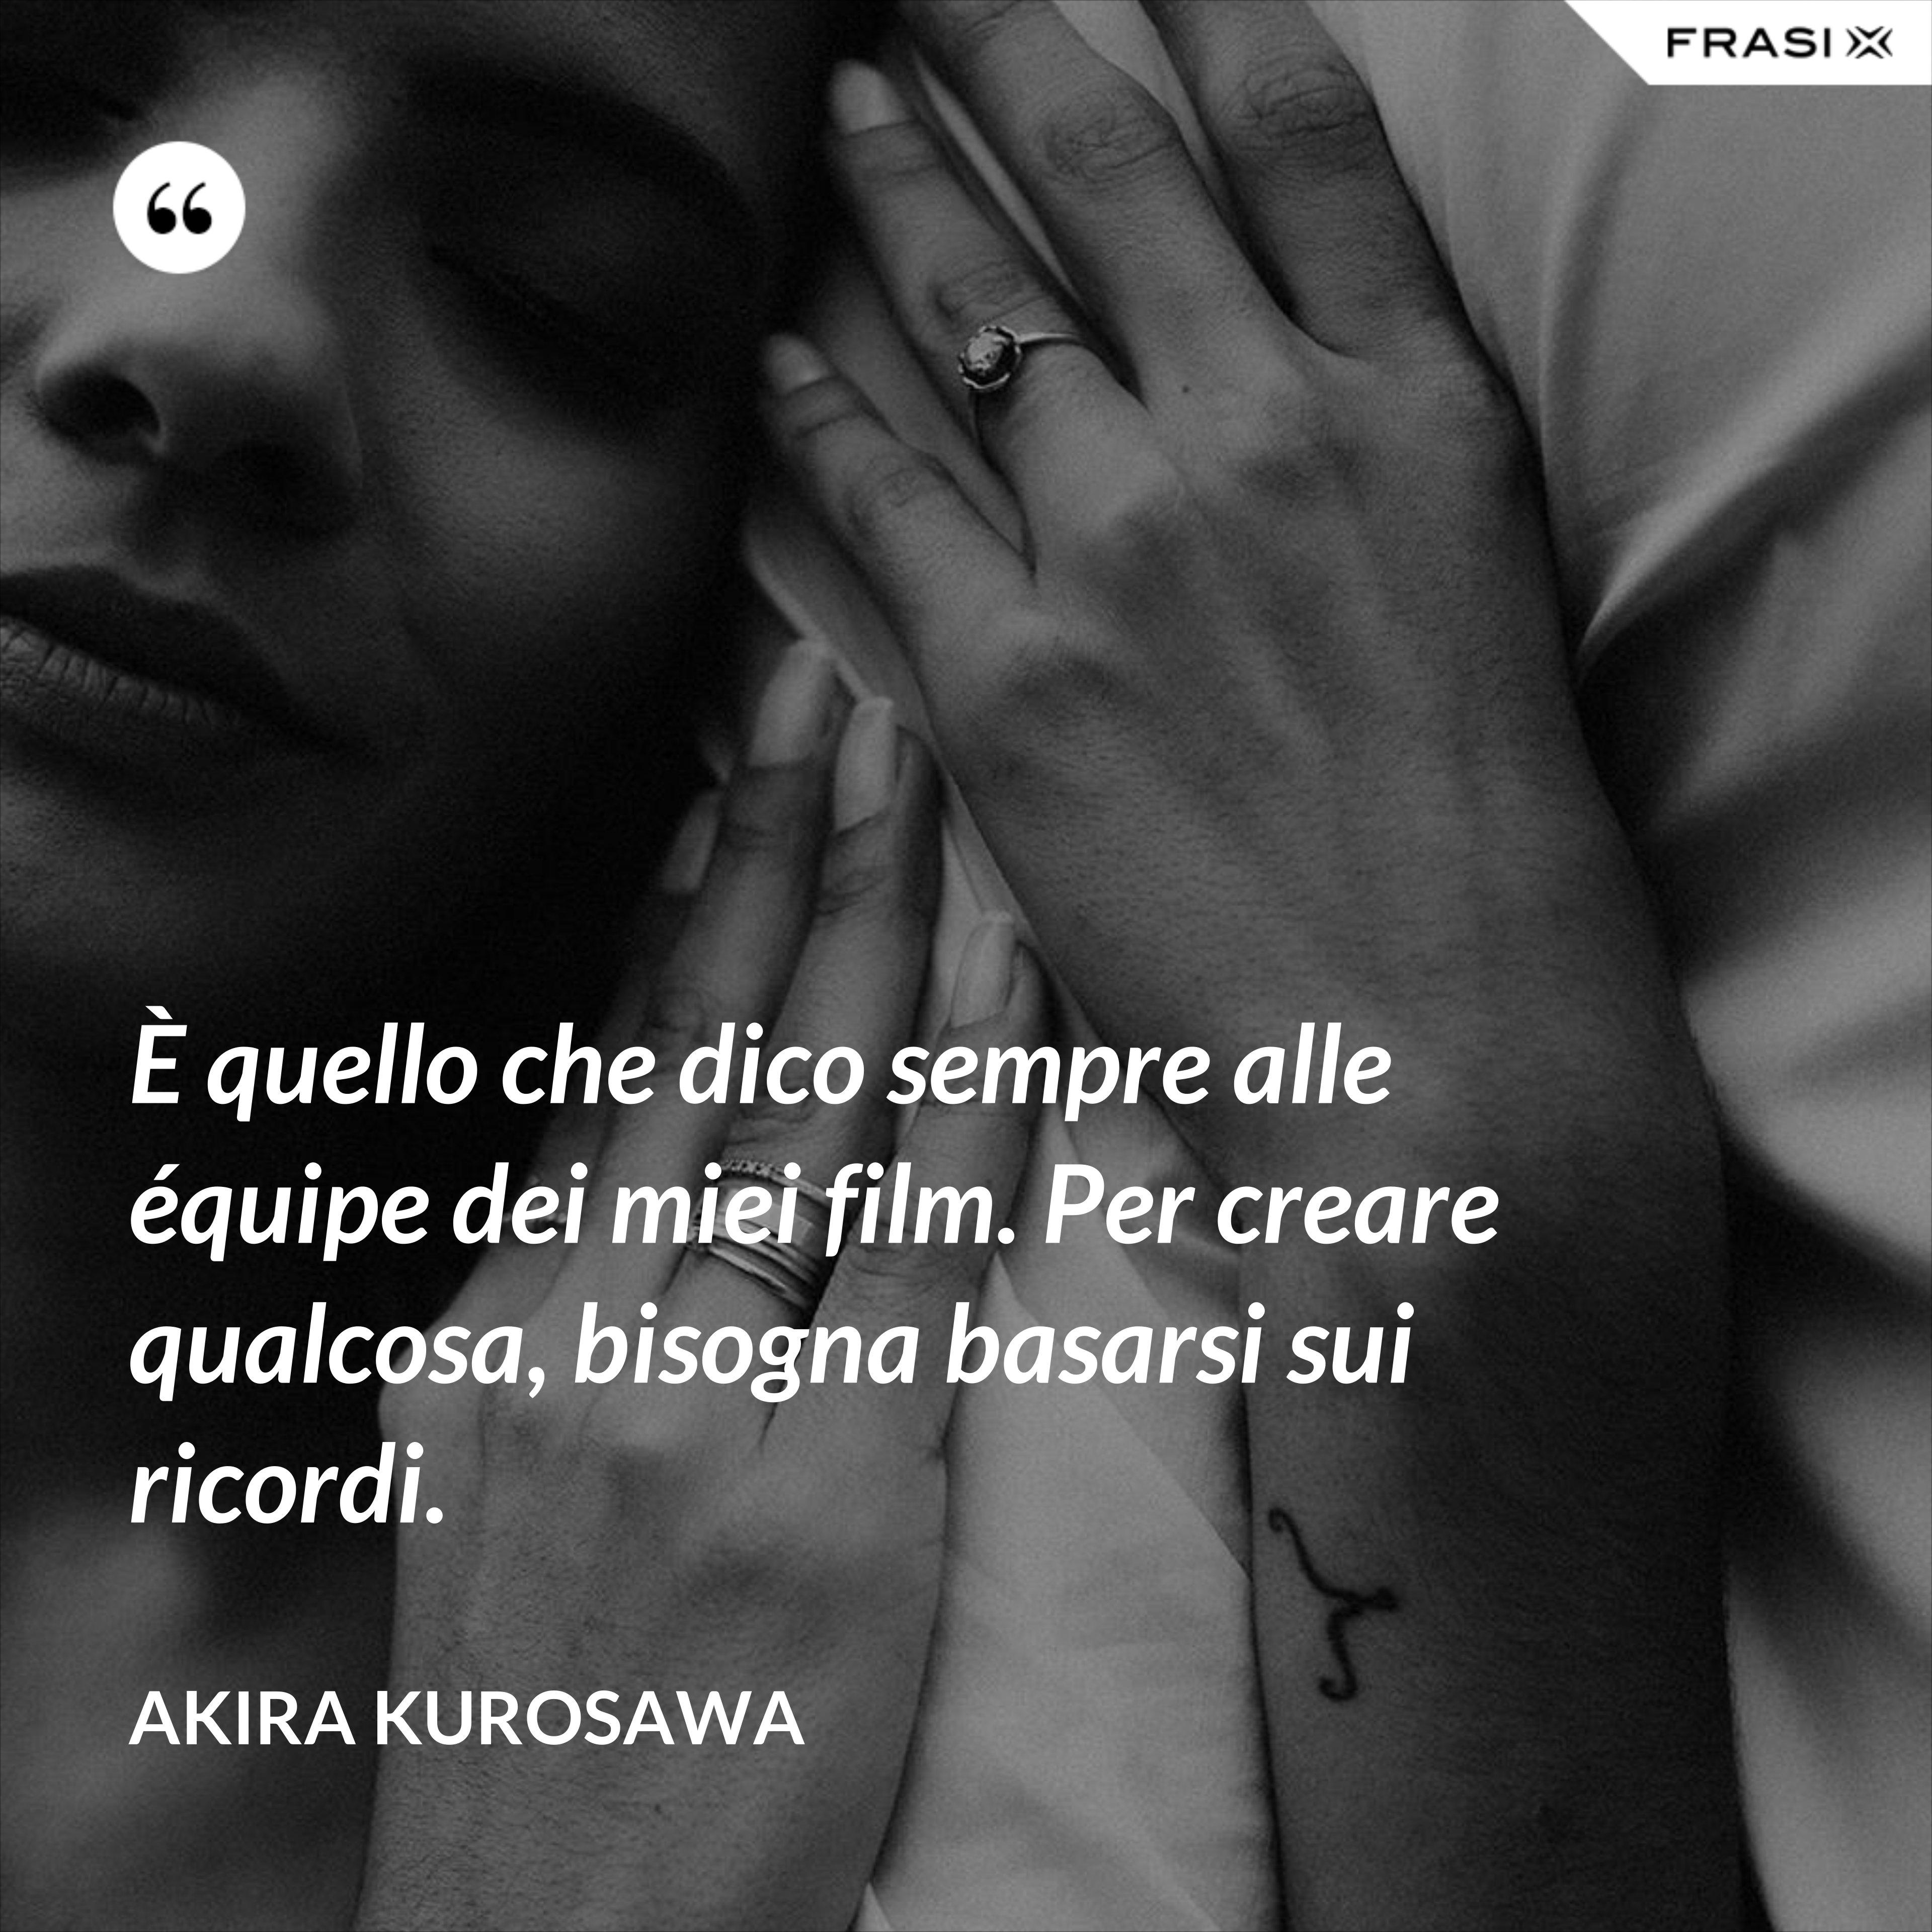 È quello che dico sempre alle équipe dei miei film. Per creare qualcosa, bisogna basarsi sui ricordi. - Akira Kurosawa